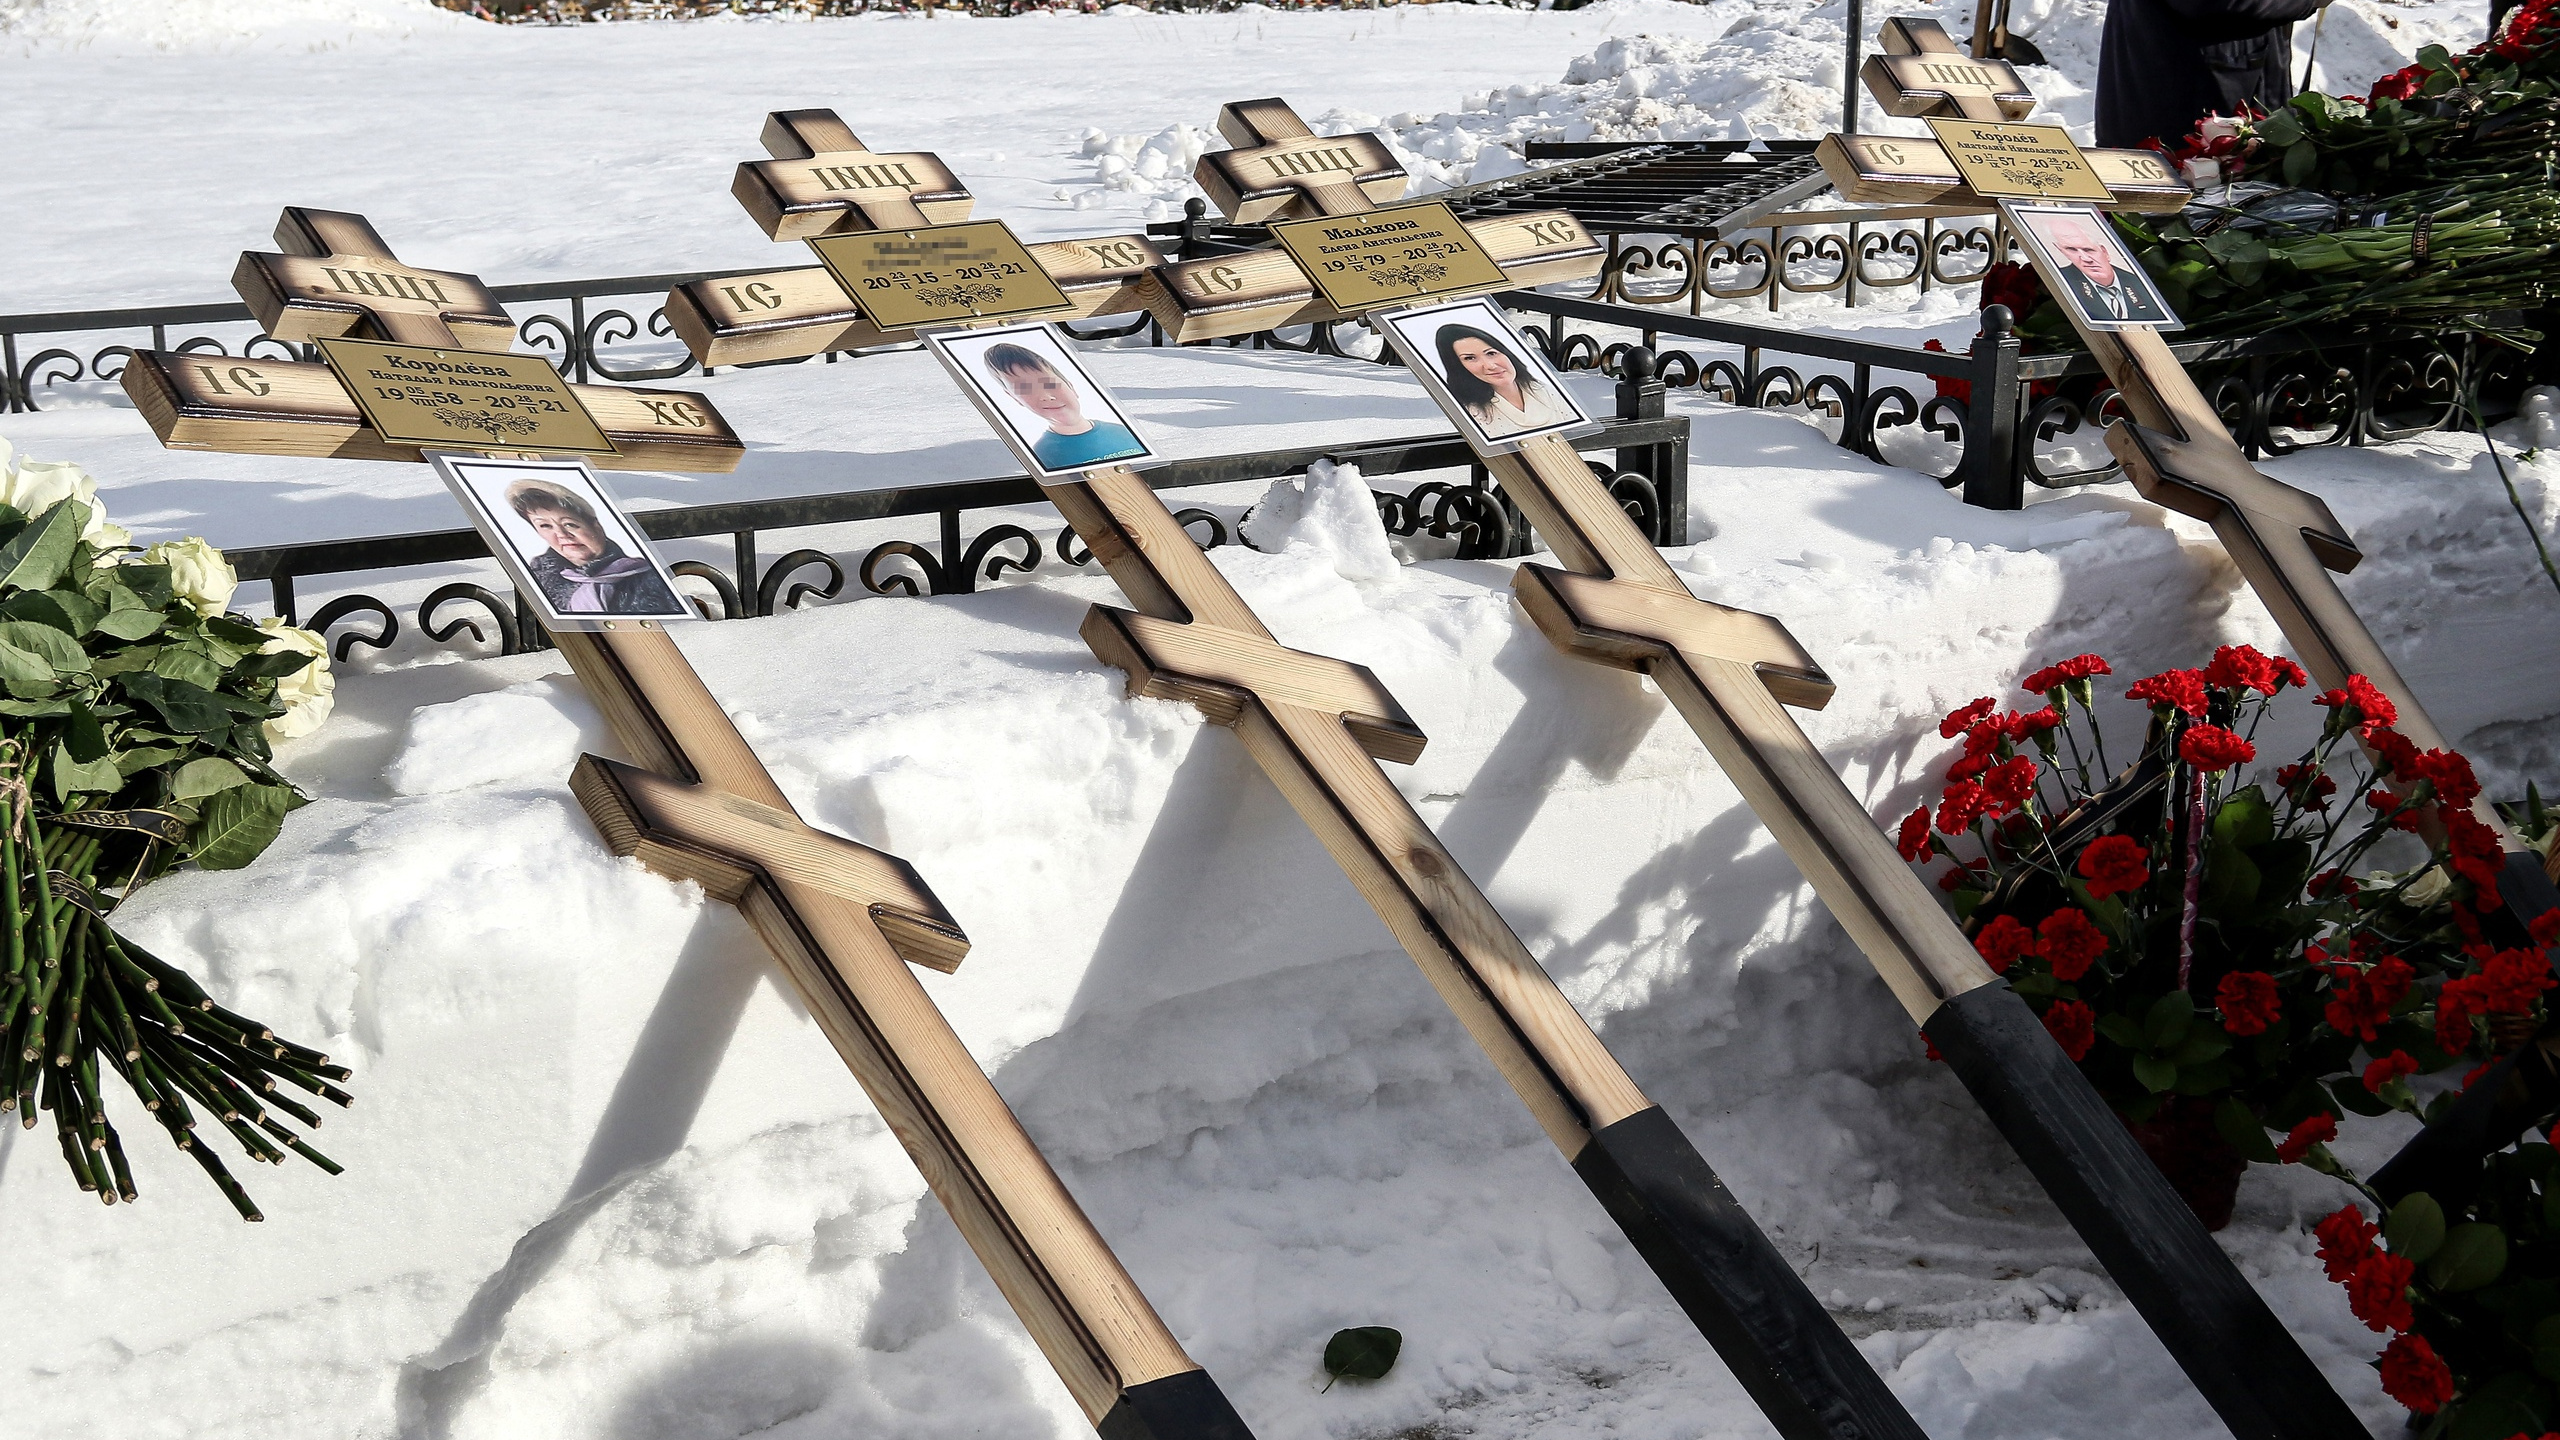 Последние новости о трагедии. Могила погибших детей в Нижнем Новгороде. Похороны семьи в Нижнем Новгороде.